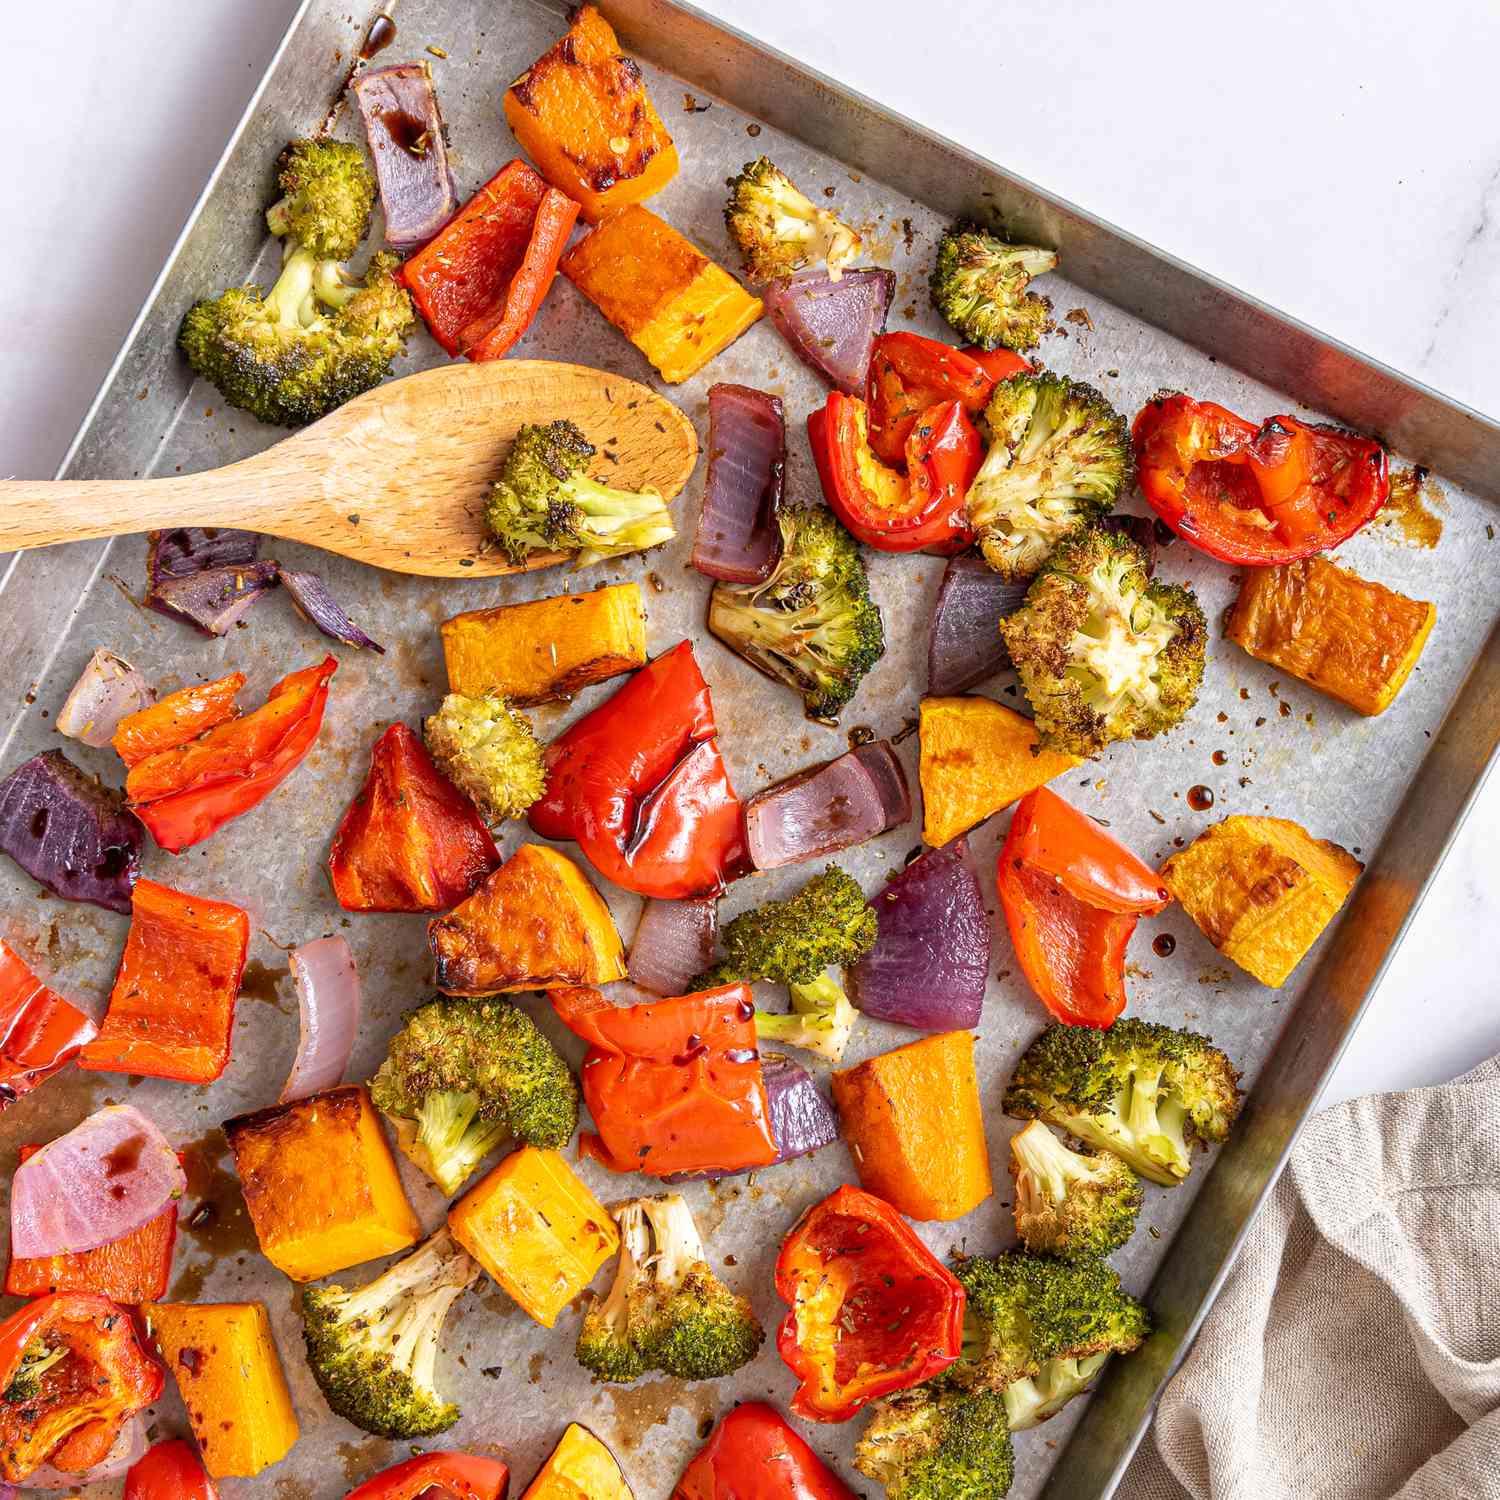 Foto de receta fotográfica de coloridas verduras asadas dispuestas en una bandeja para hornear galletas